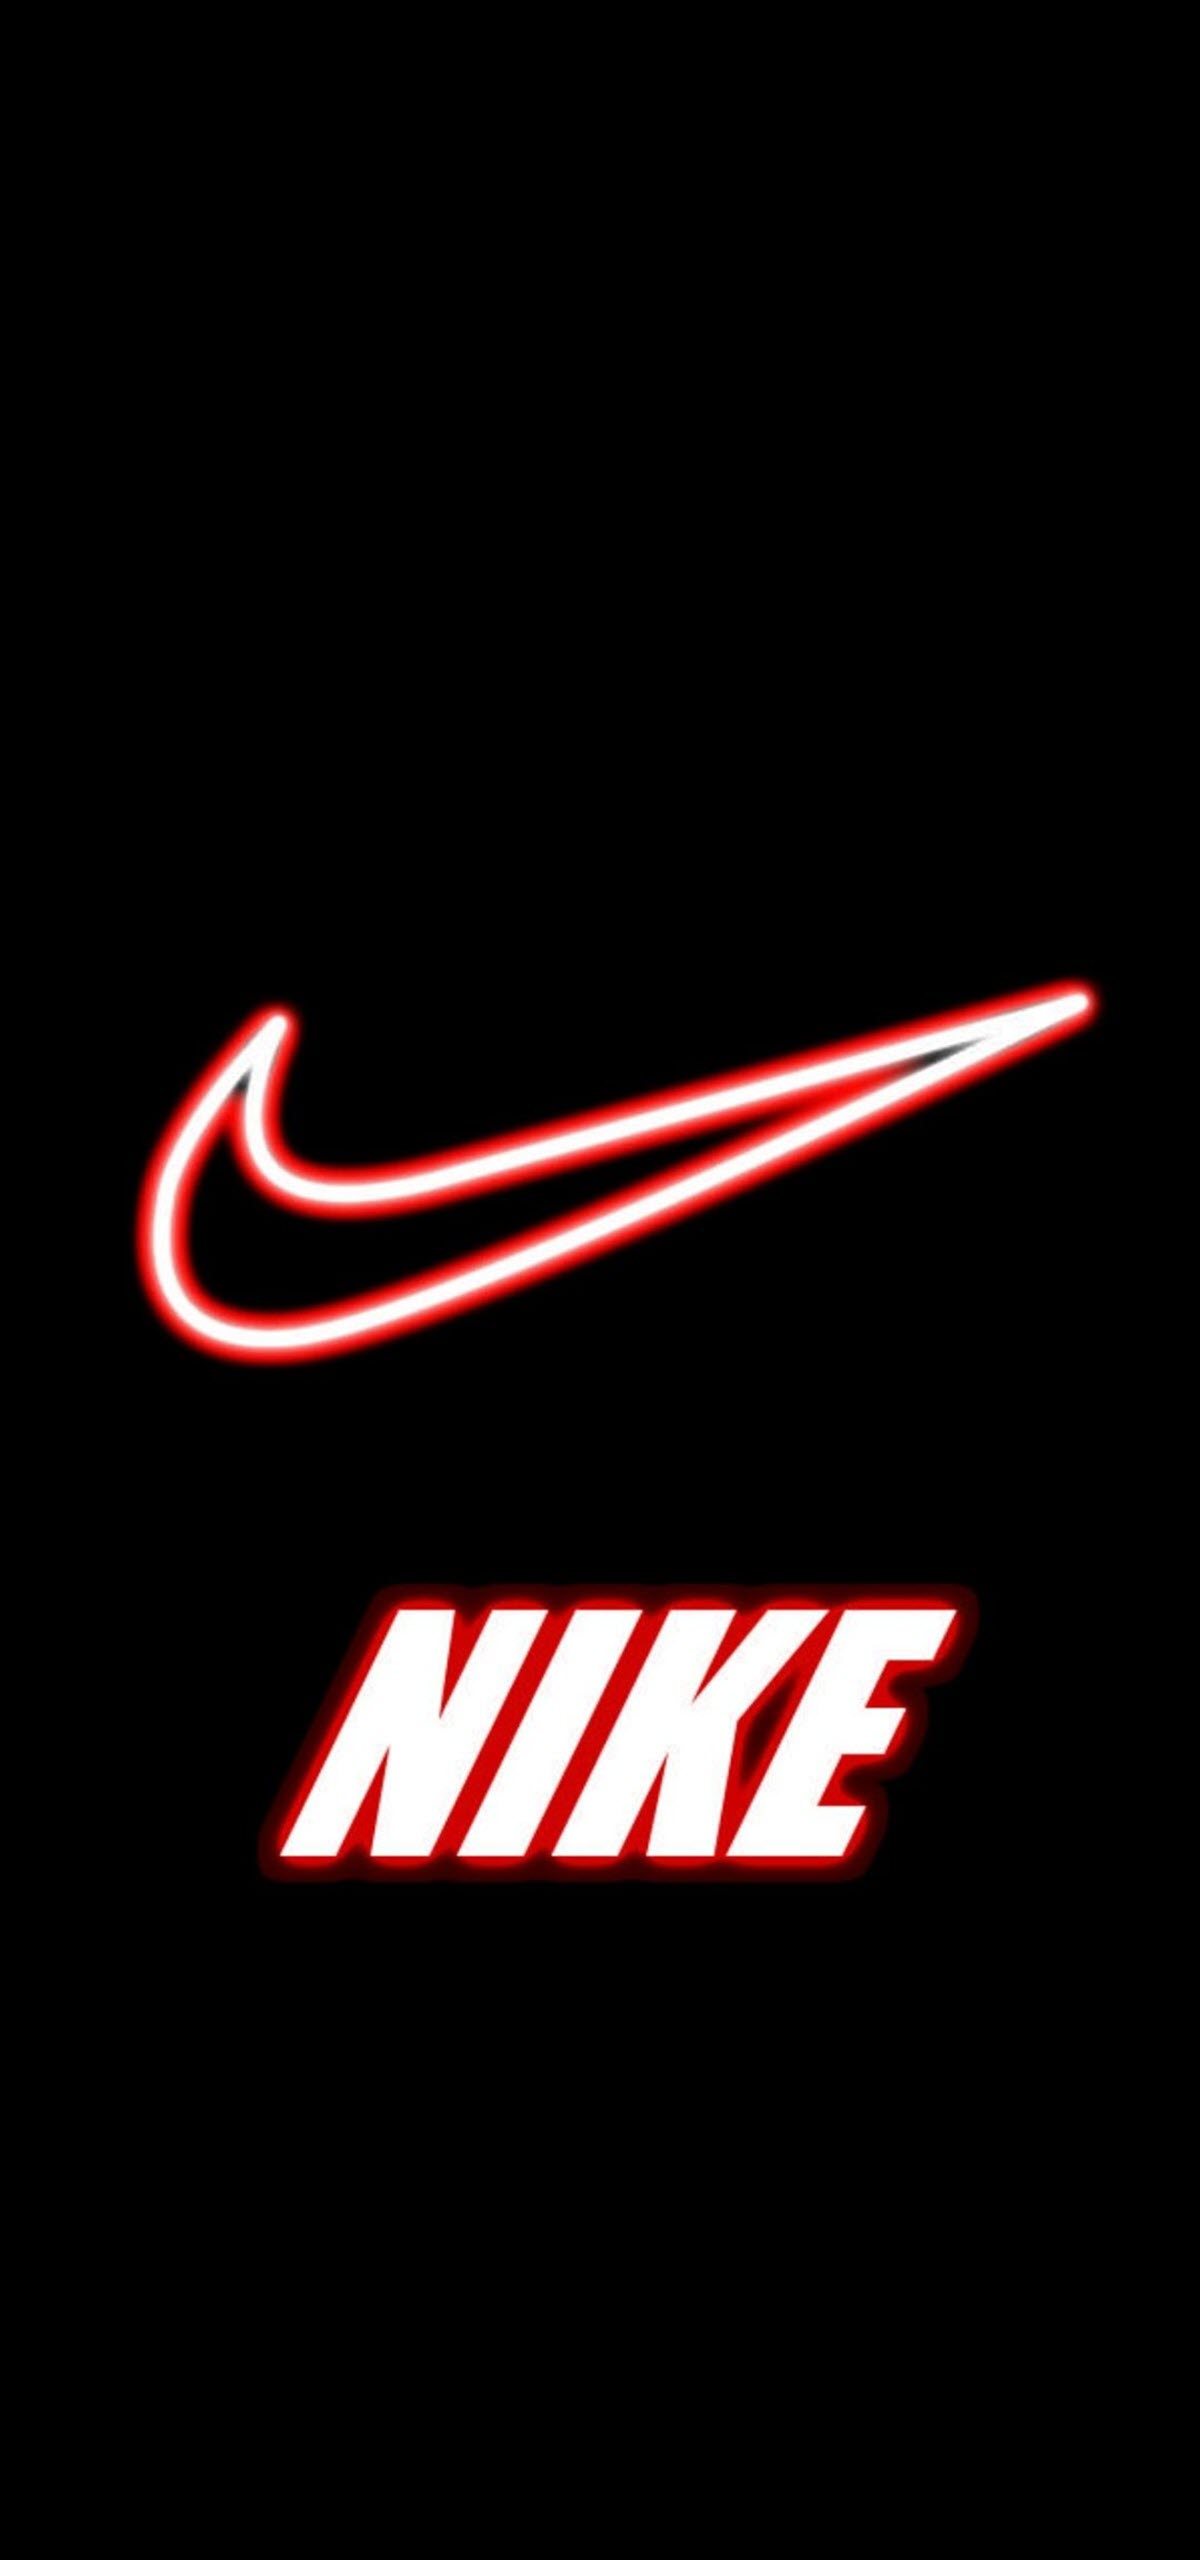 Hình ảnh về Logo Nike cho iPhone